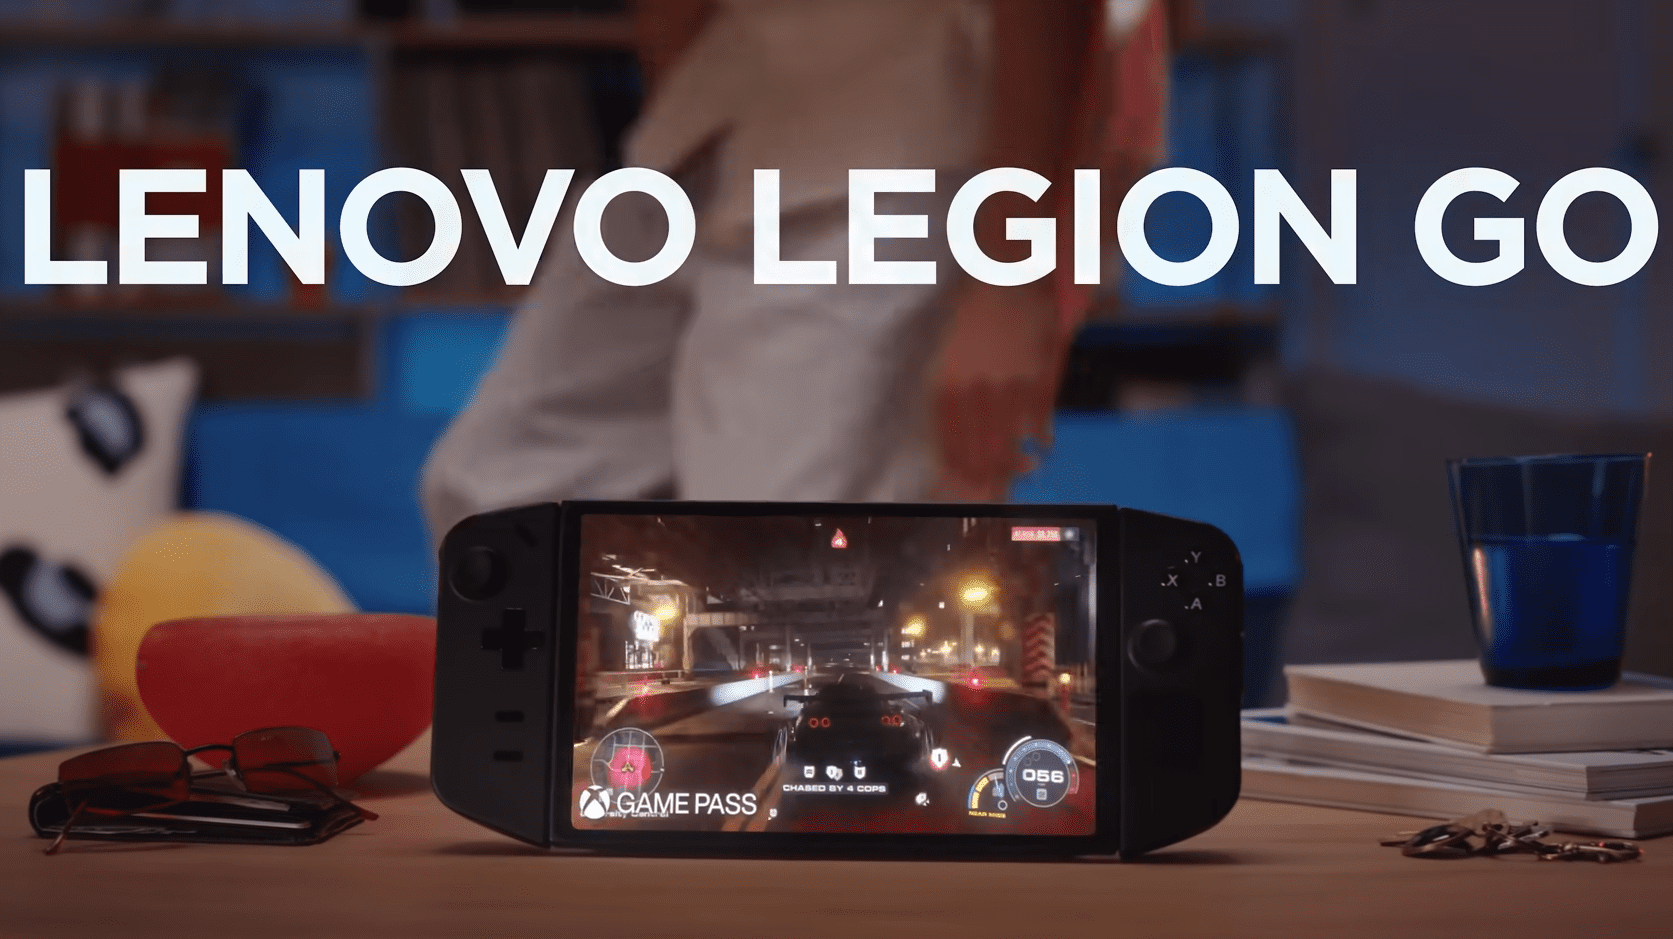 Oggi in Cina inizieranno le vendite della console Lenovo Legion Go